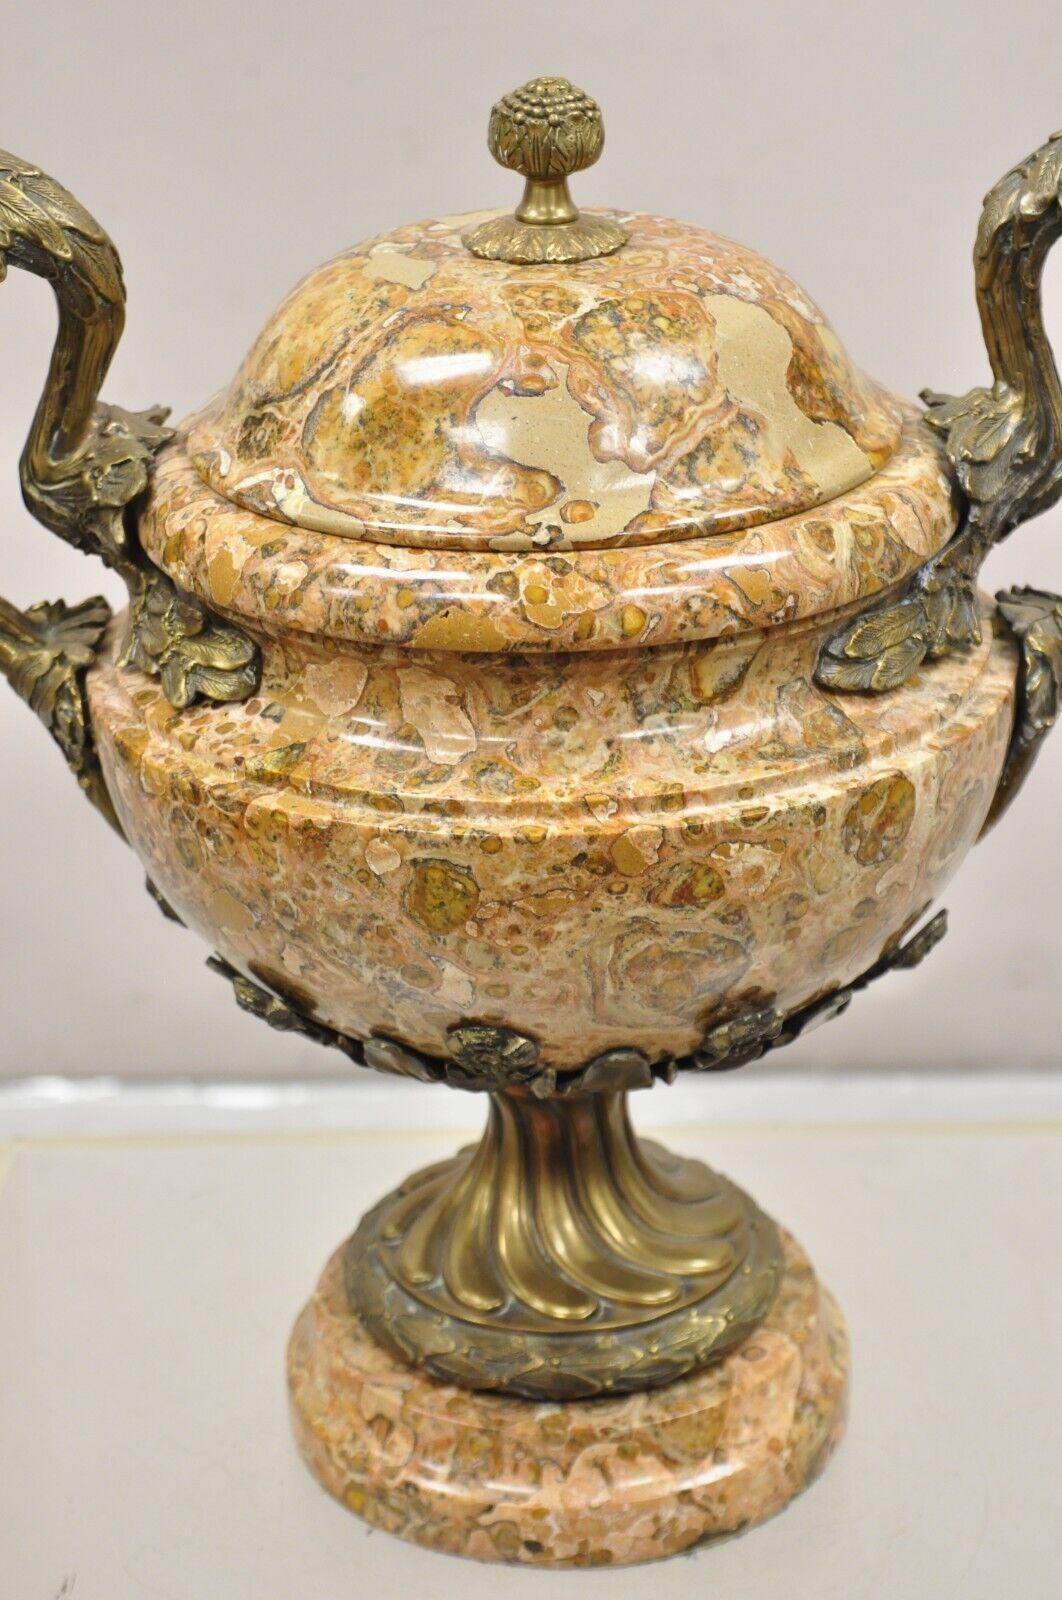 Cassolette en bronze et marbre de style baroque français à couvercle en forme d'urne. L'objet se caractérise par une construction lourde en marbre et en bronze, des bras feuillus à volutes, un couvercle amovible, une très belle pièce maîtresse.